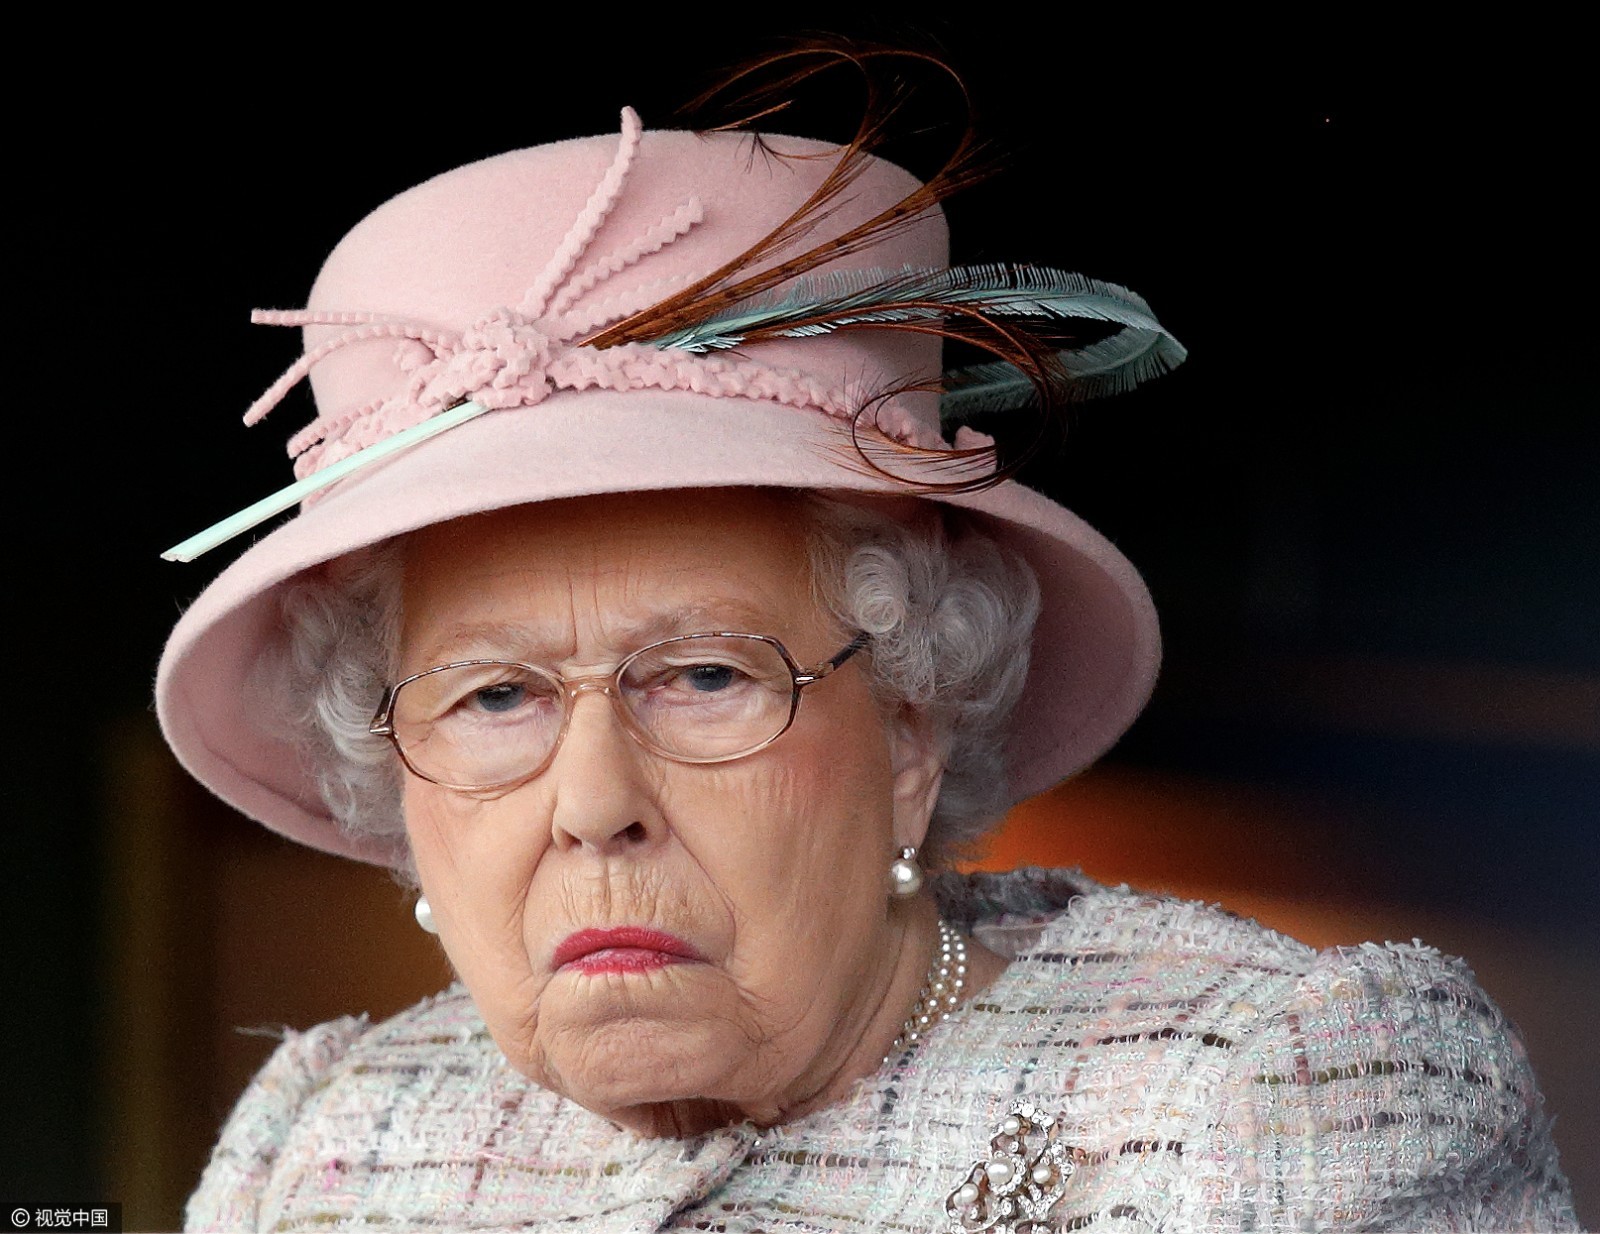 英国女王表情包图片